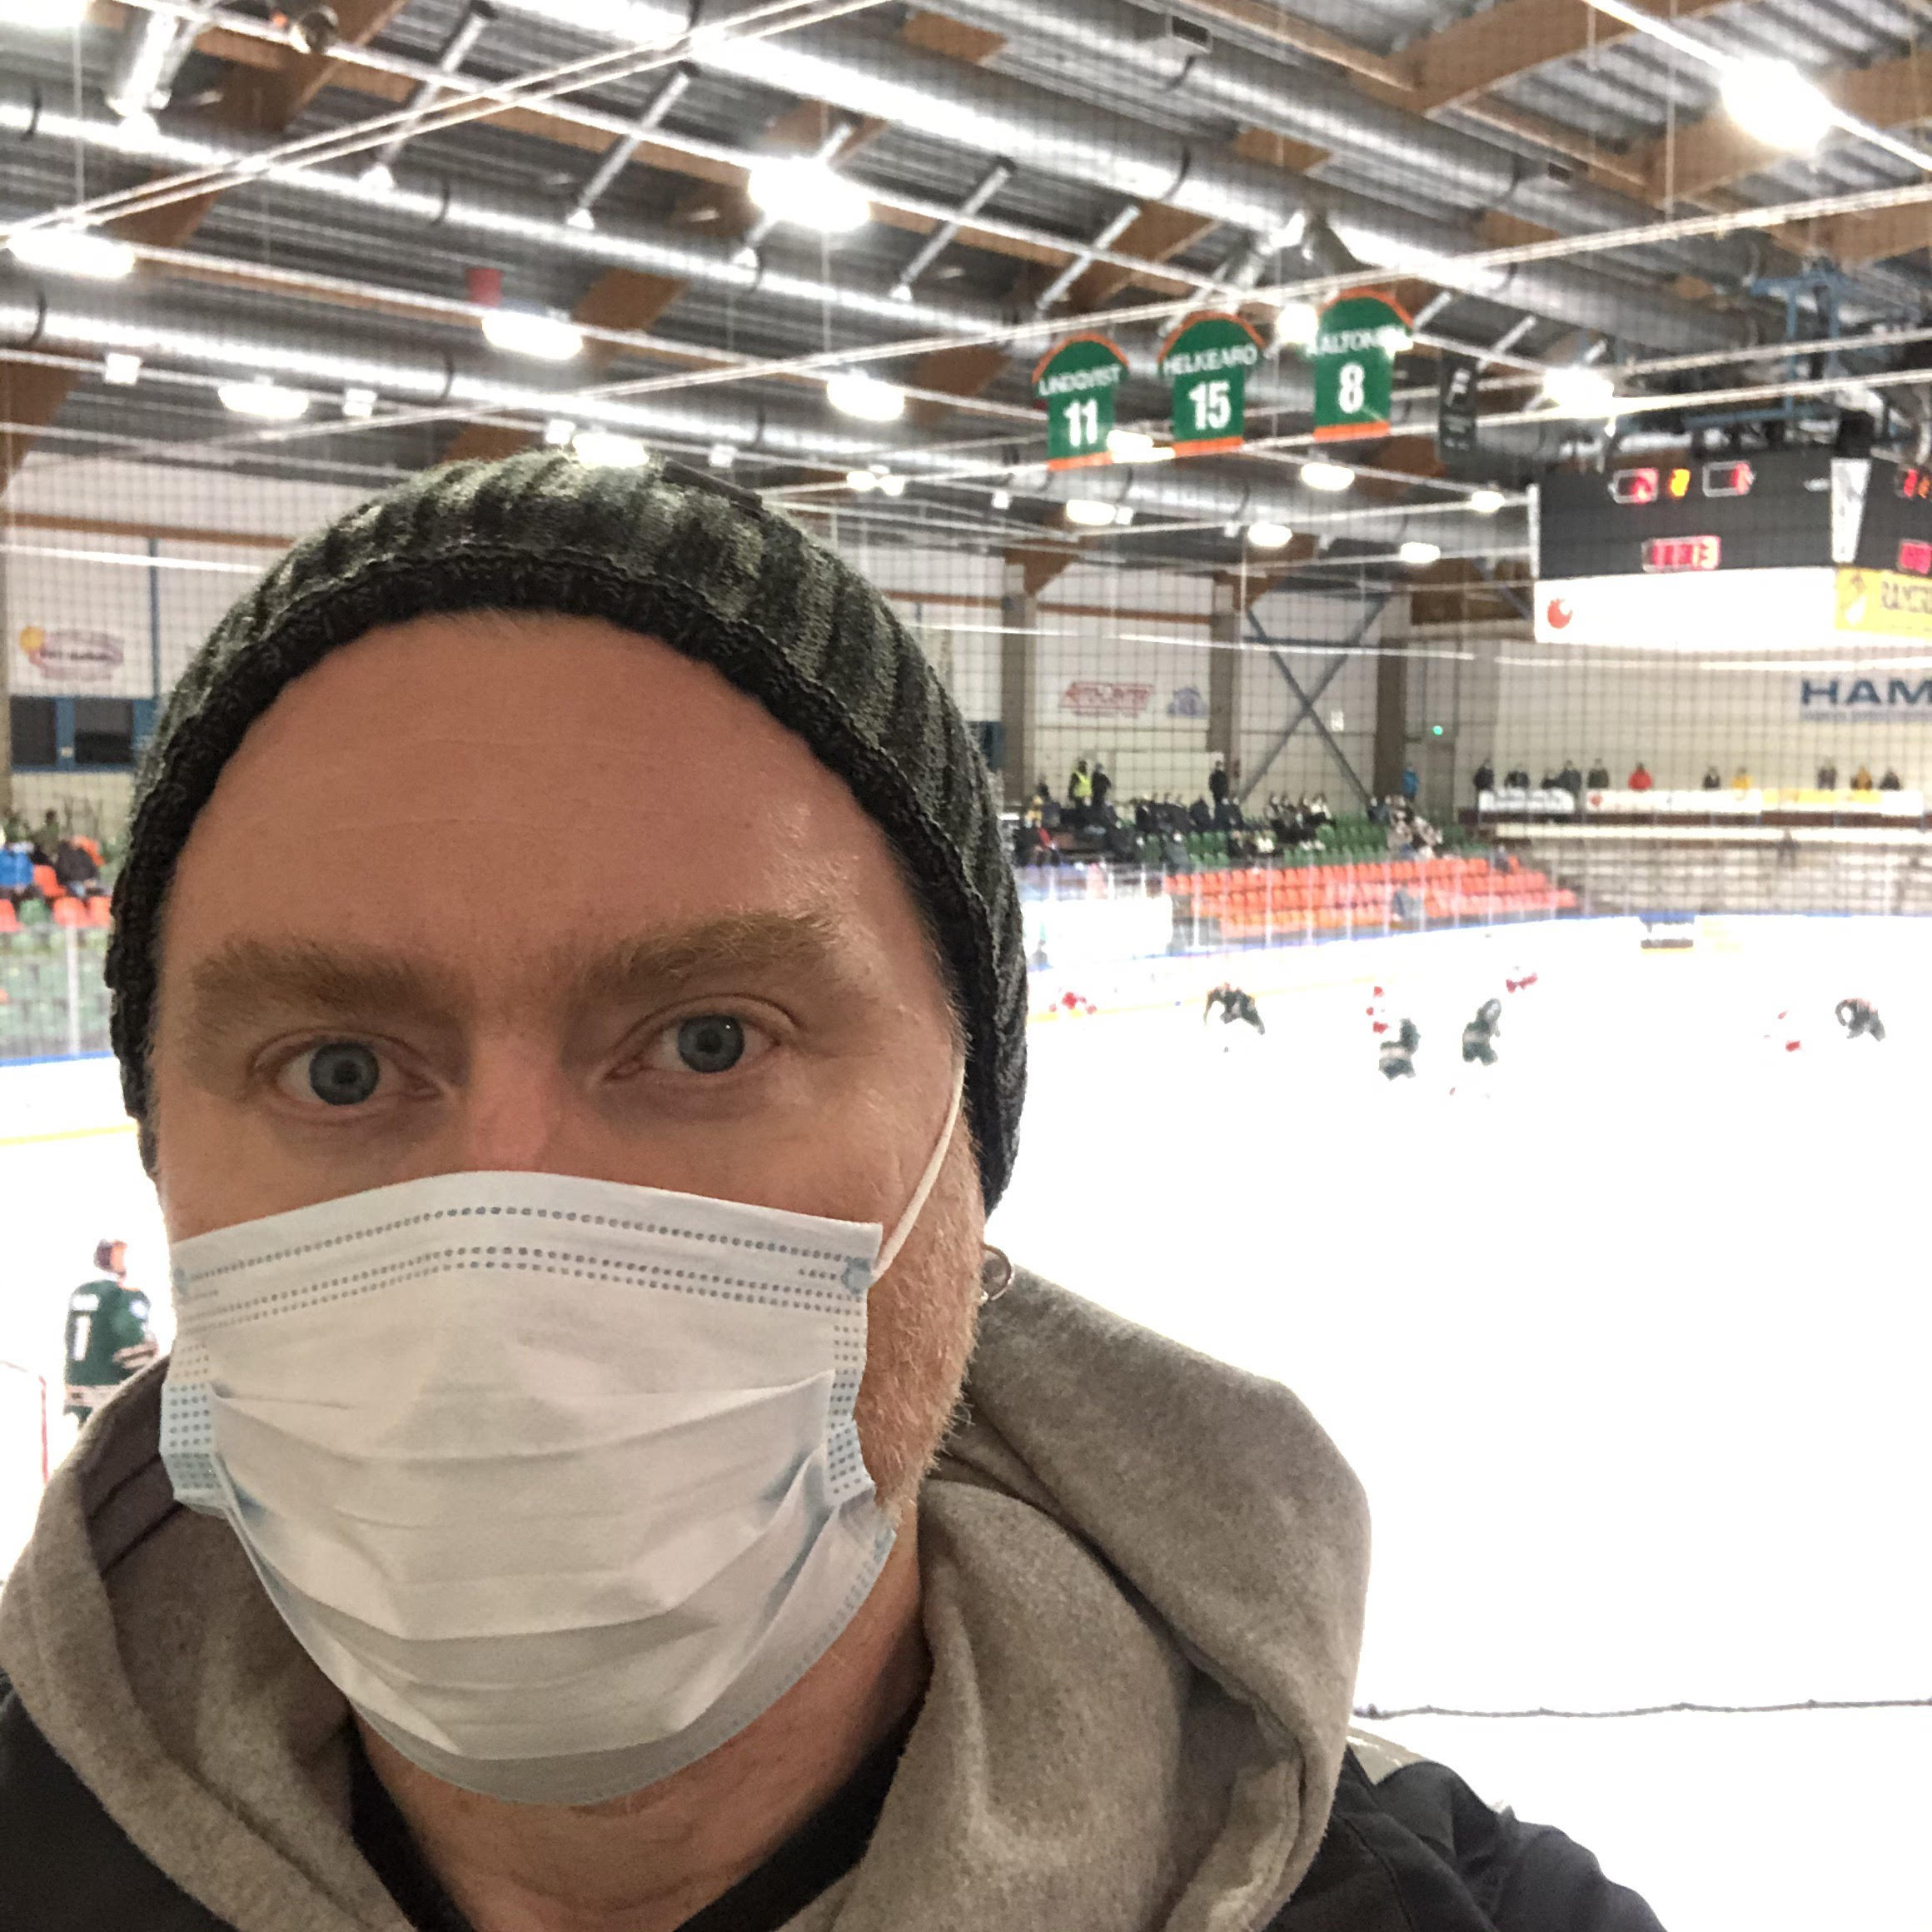 Seuran mies Jukka Vuorio nautti isyyslomansa hetkestä Forssan jäähallissa. "Isyysloma on ihmisen, tai ainakin isän, parasta aikaa", hän sanoo.